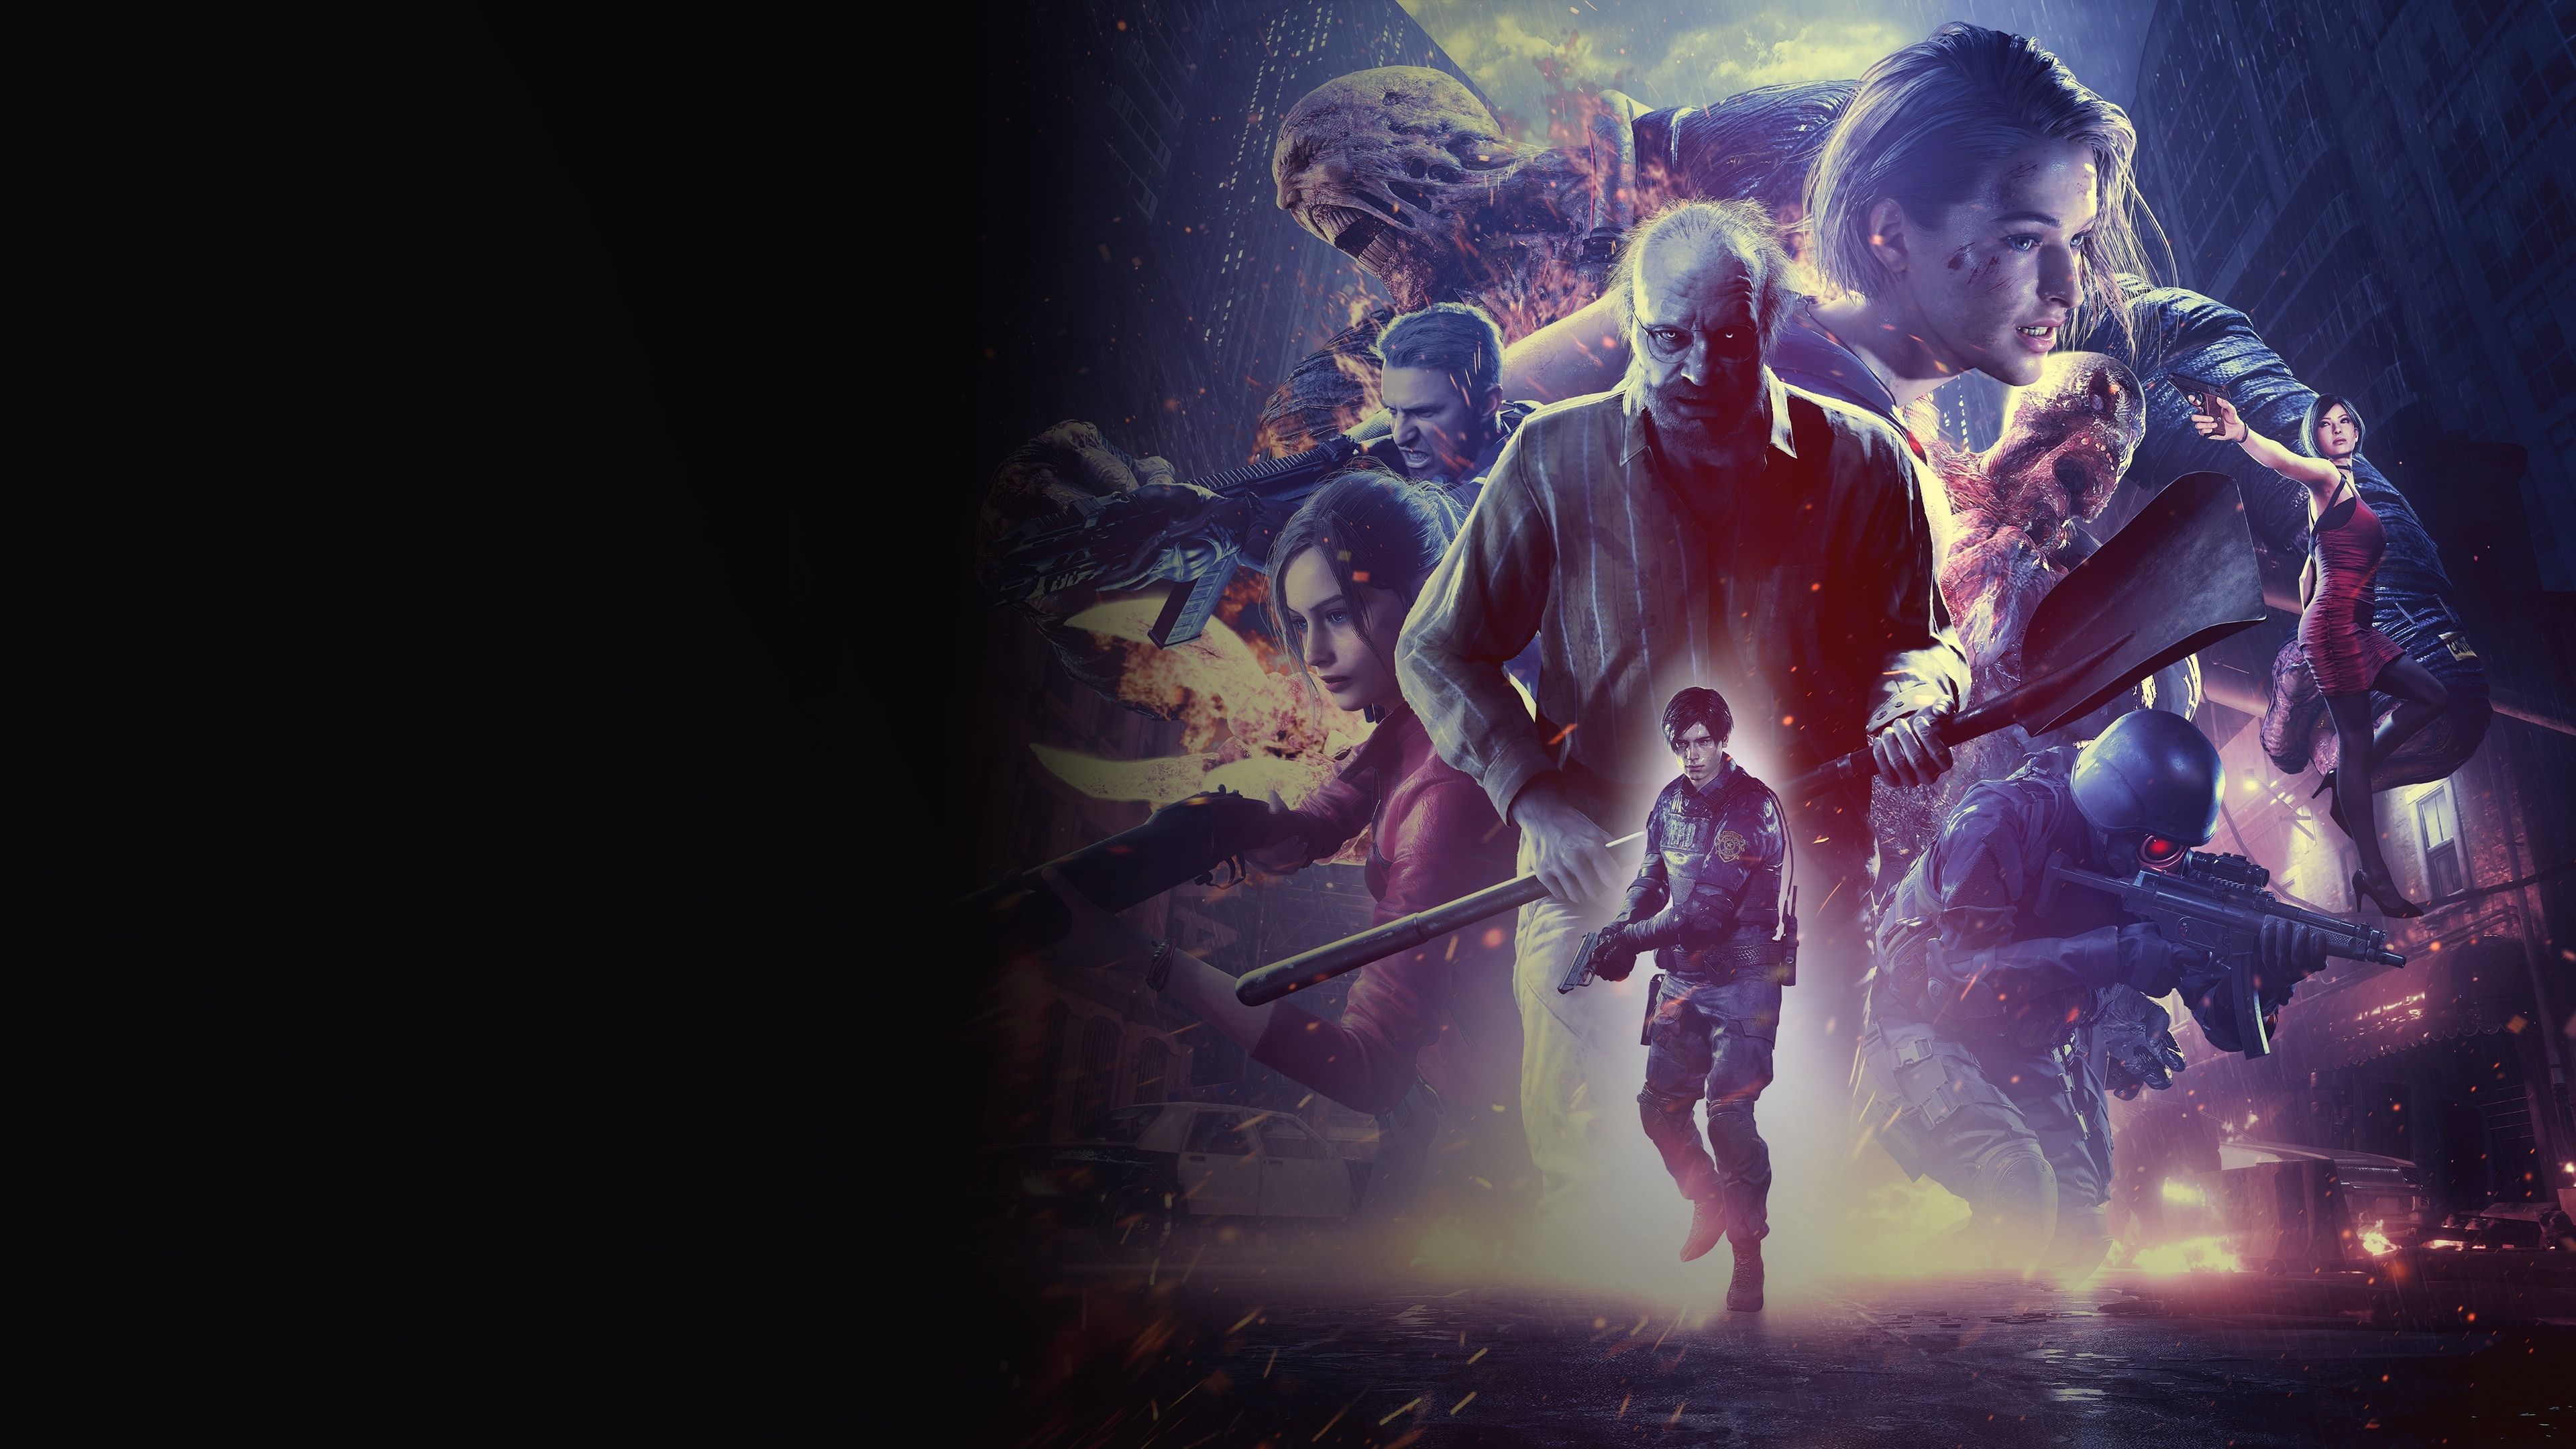 New Resident Evil Re:Verse 2021 Wallpaper, HD Games 4K Wallpaper, Image, Photo and Background Den. Resident evil, Evil, Wallpaper